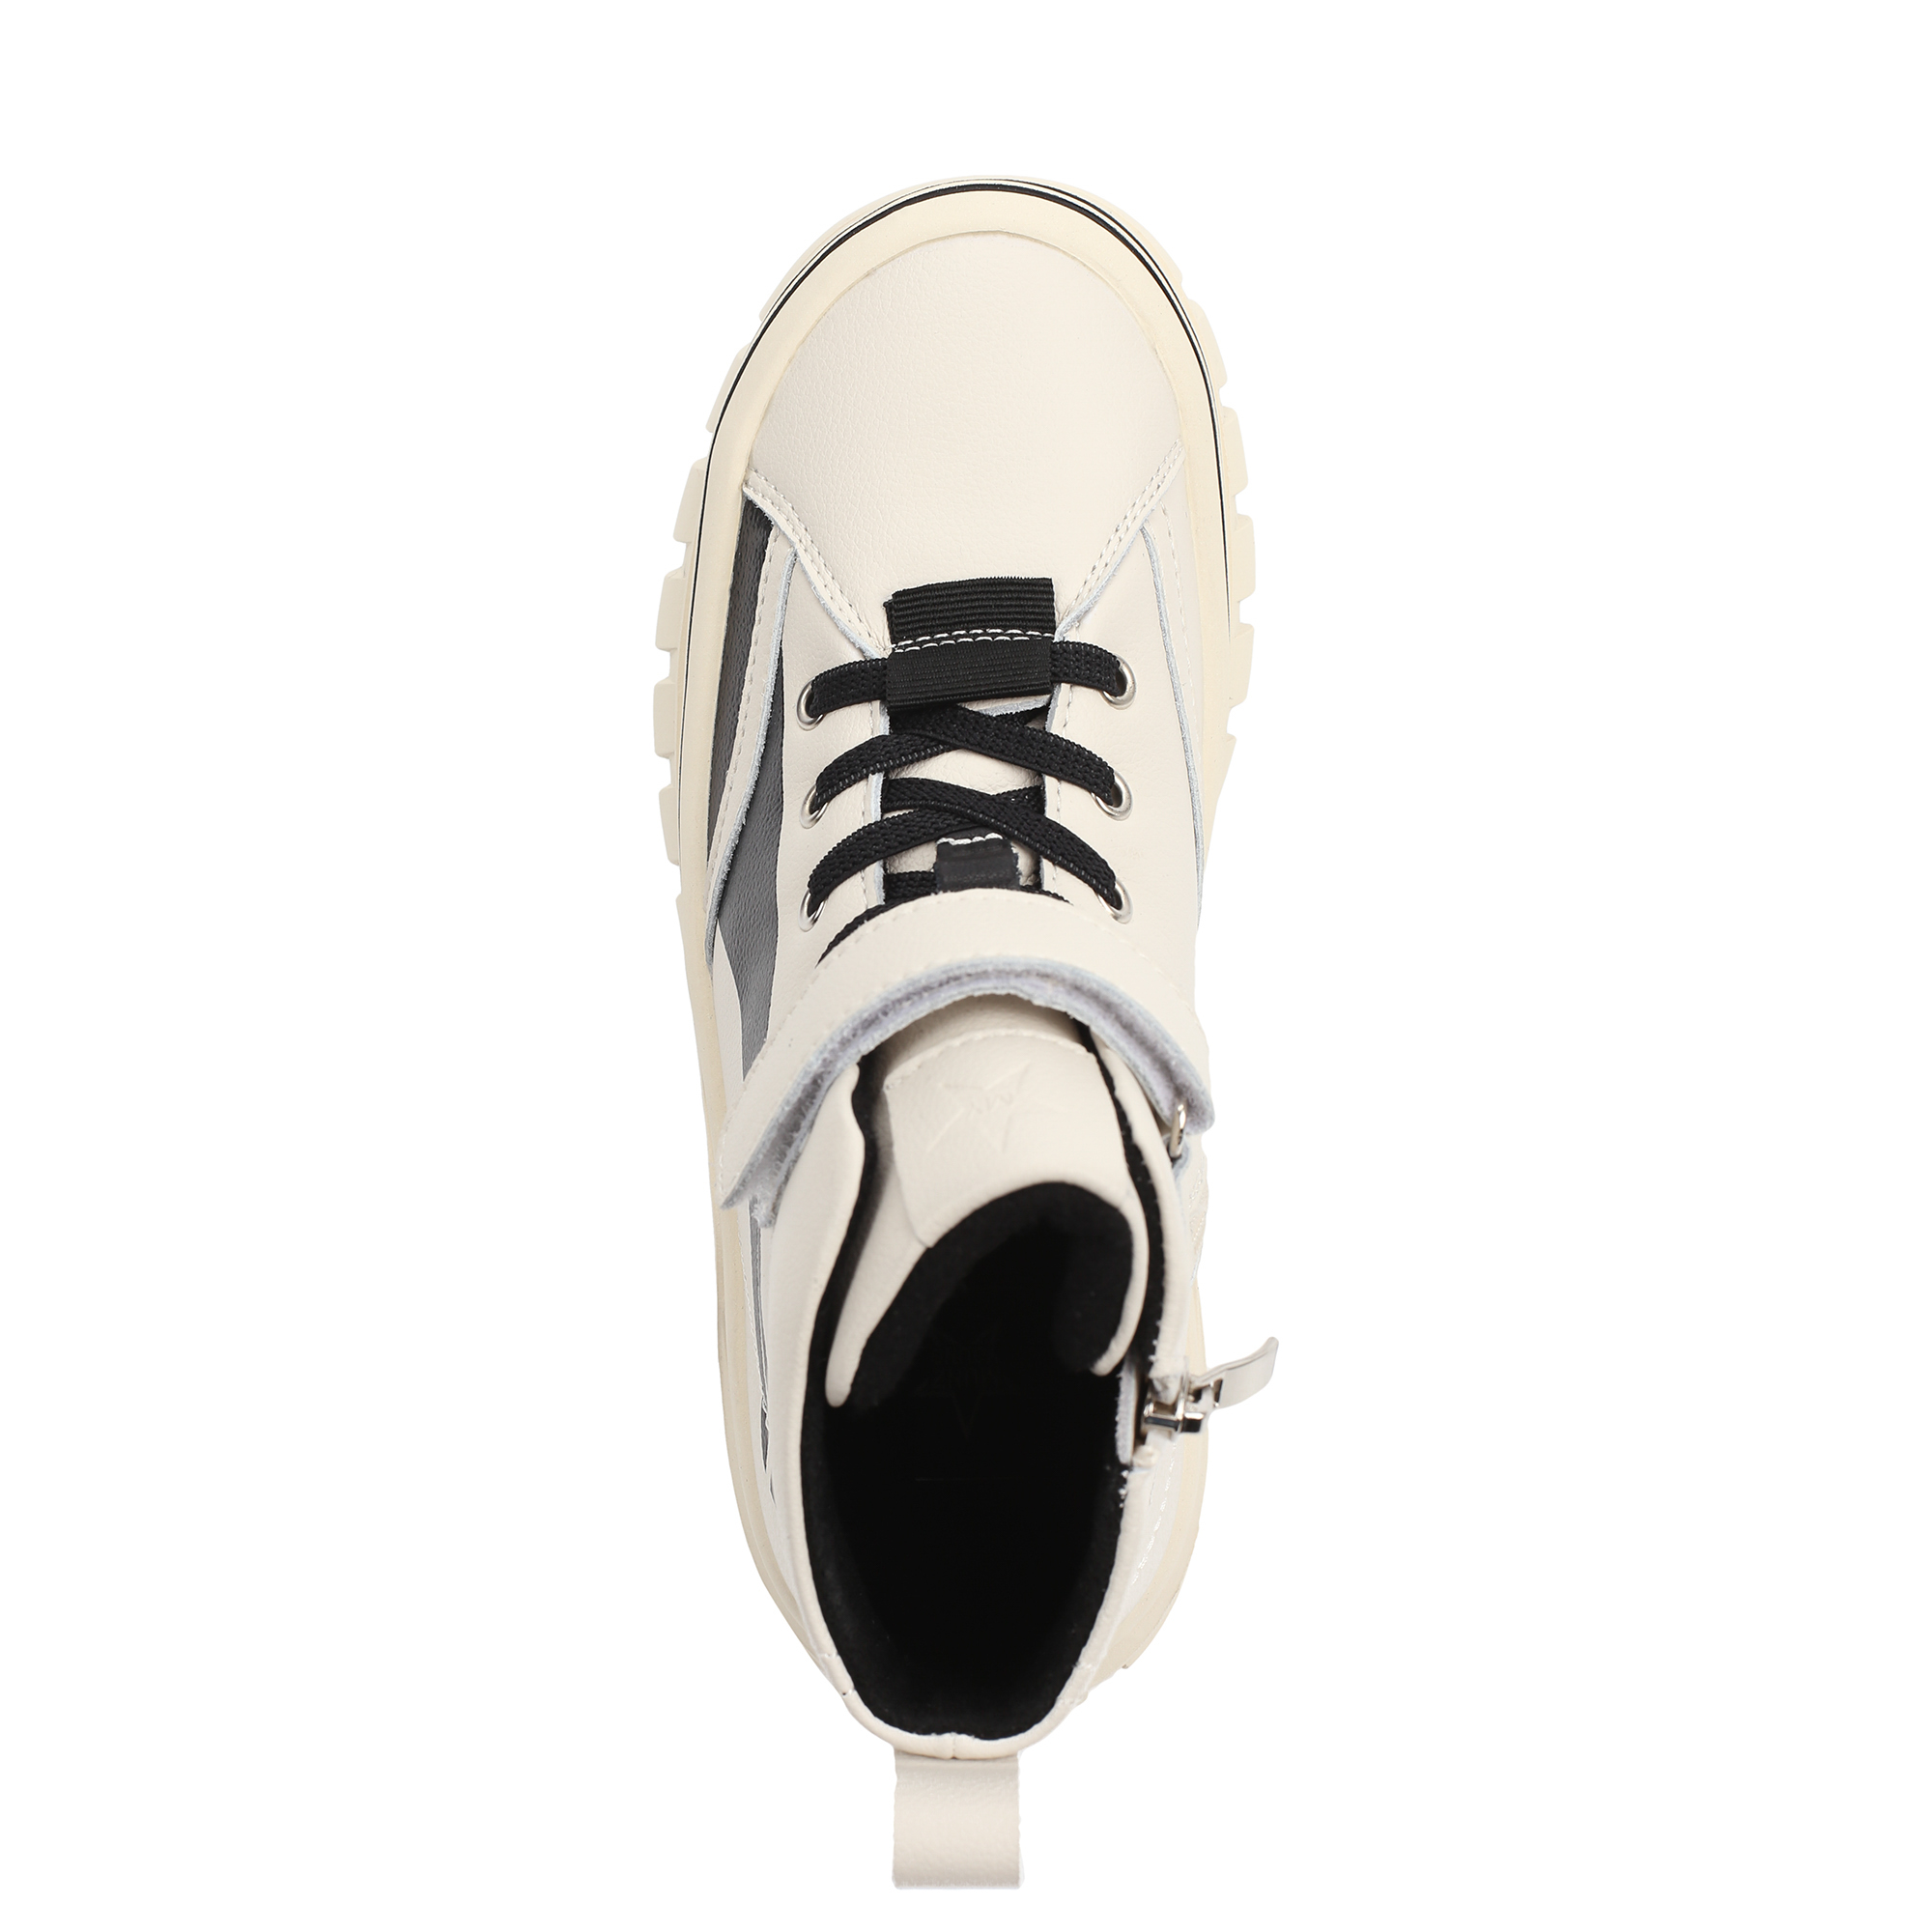 Обувь для мальчиков MUNZ YOUNG 098-680A-74601, цвет светло-бежевый, размер 37 - фото 5